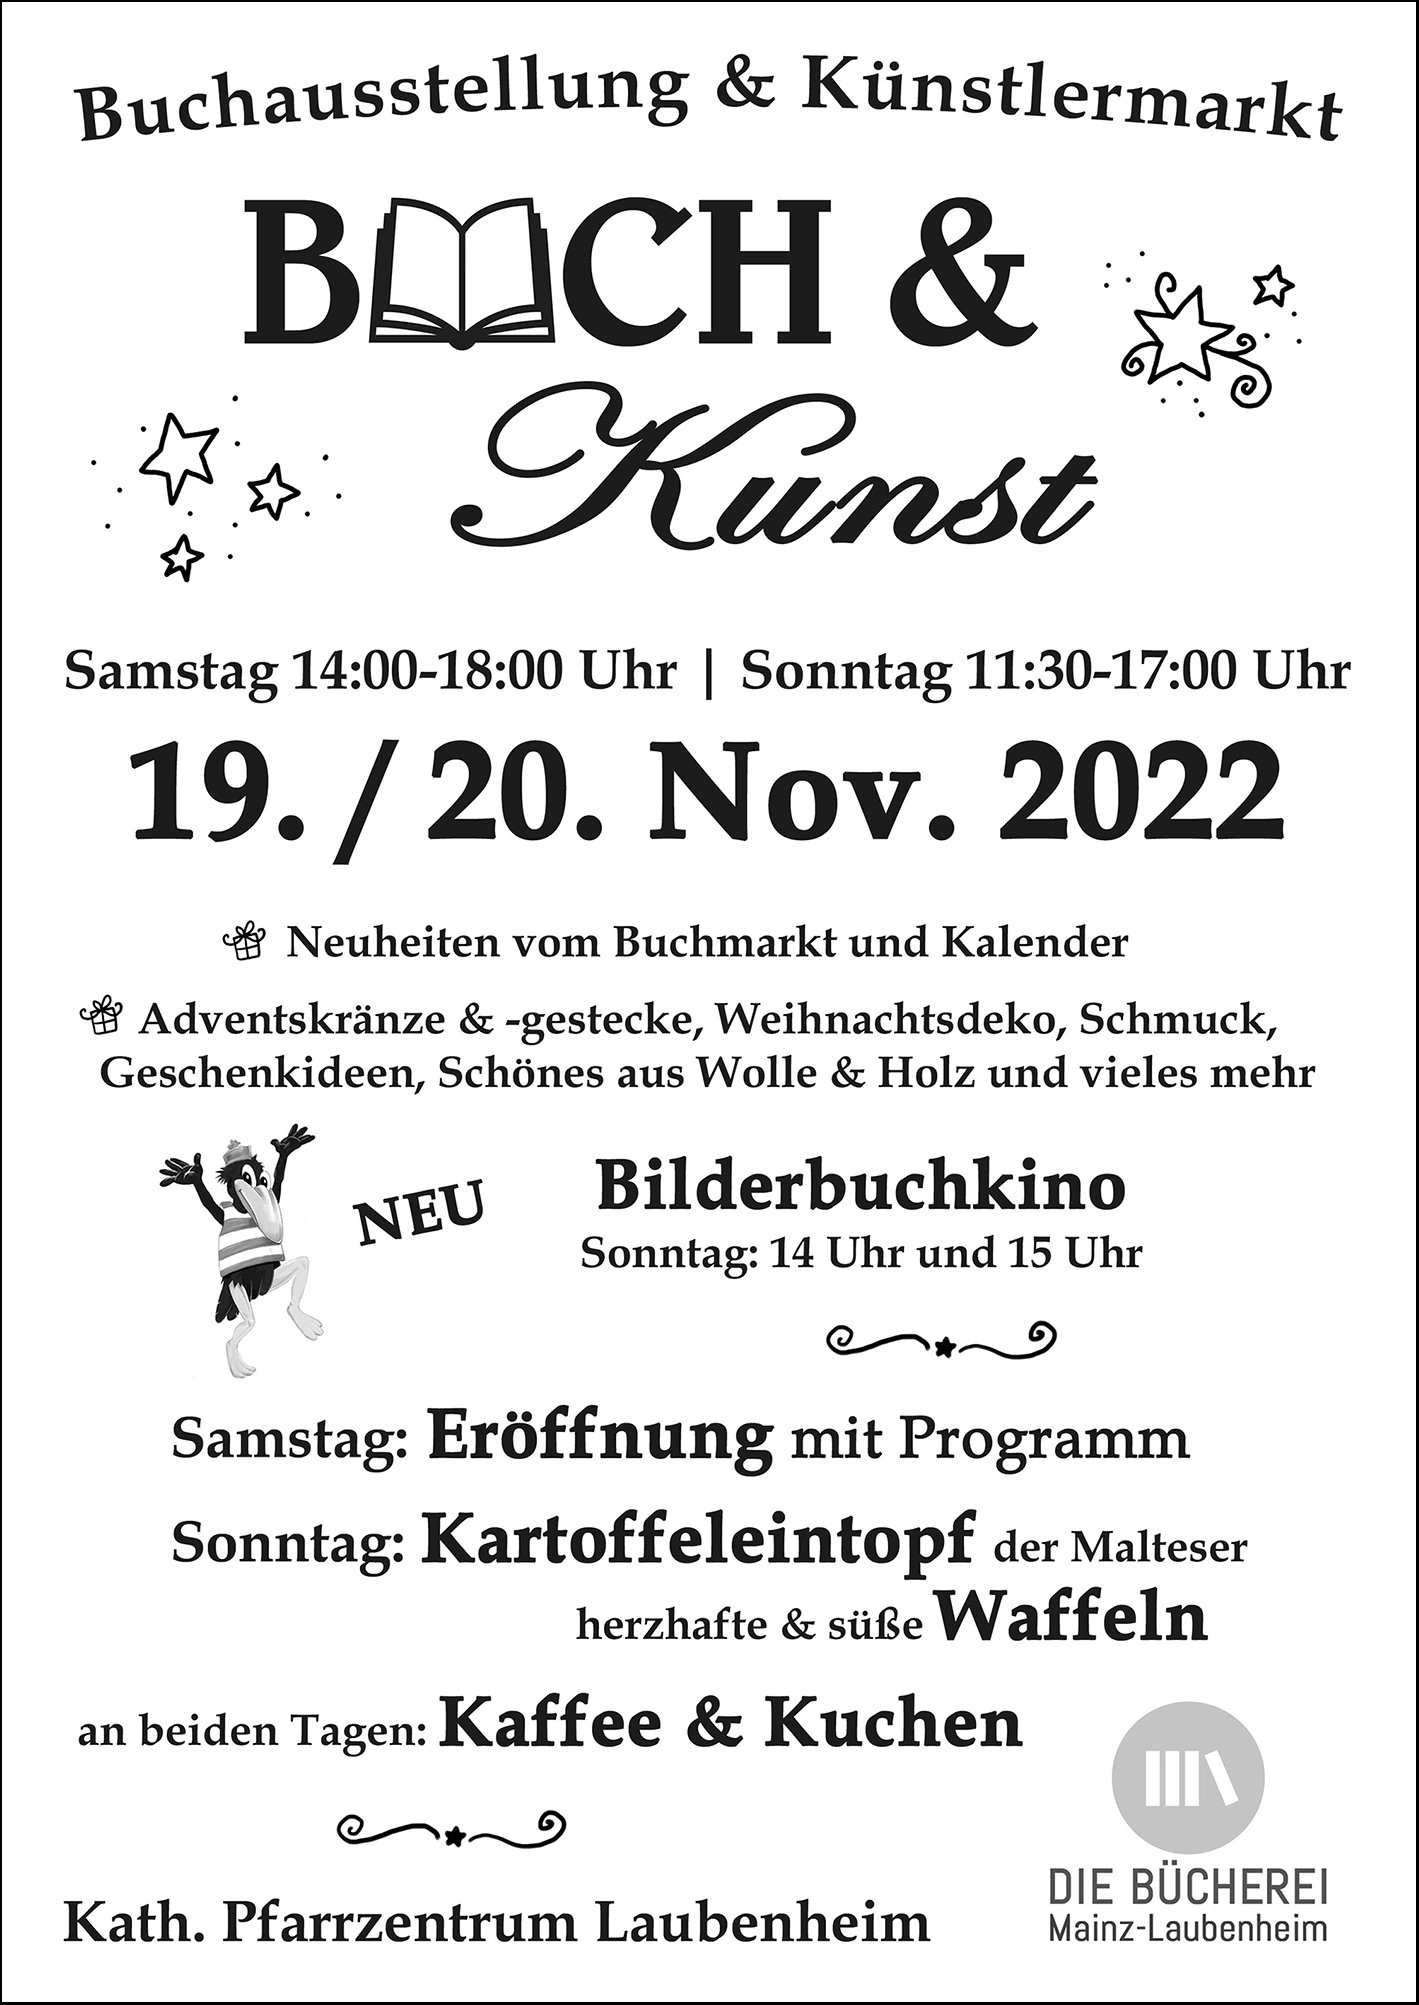 Plakat-Buch-und-Kunst-2022-Buecherei-Mainz-Laubenheim (c) Die Bücherei Mainz-Laubenheim